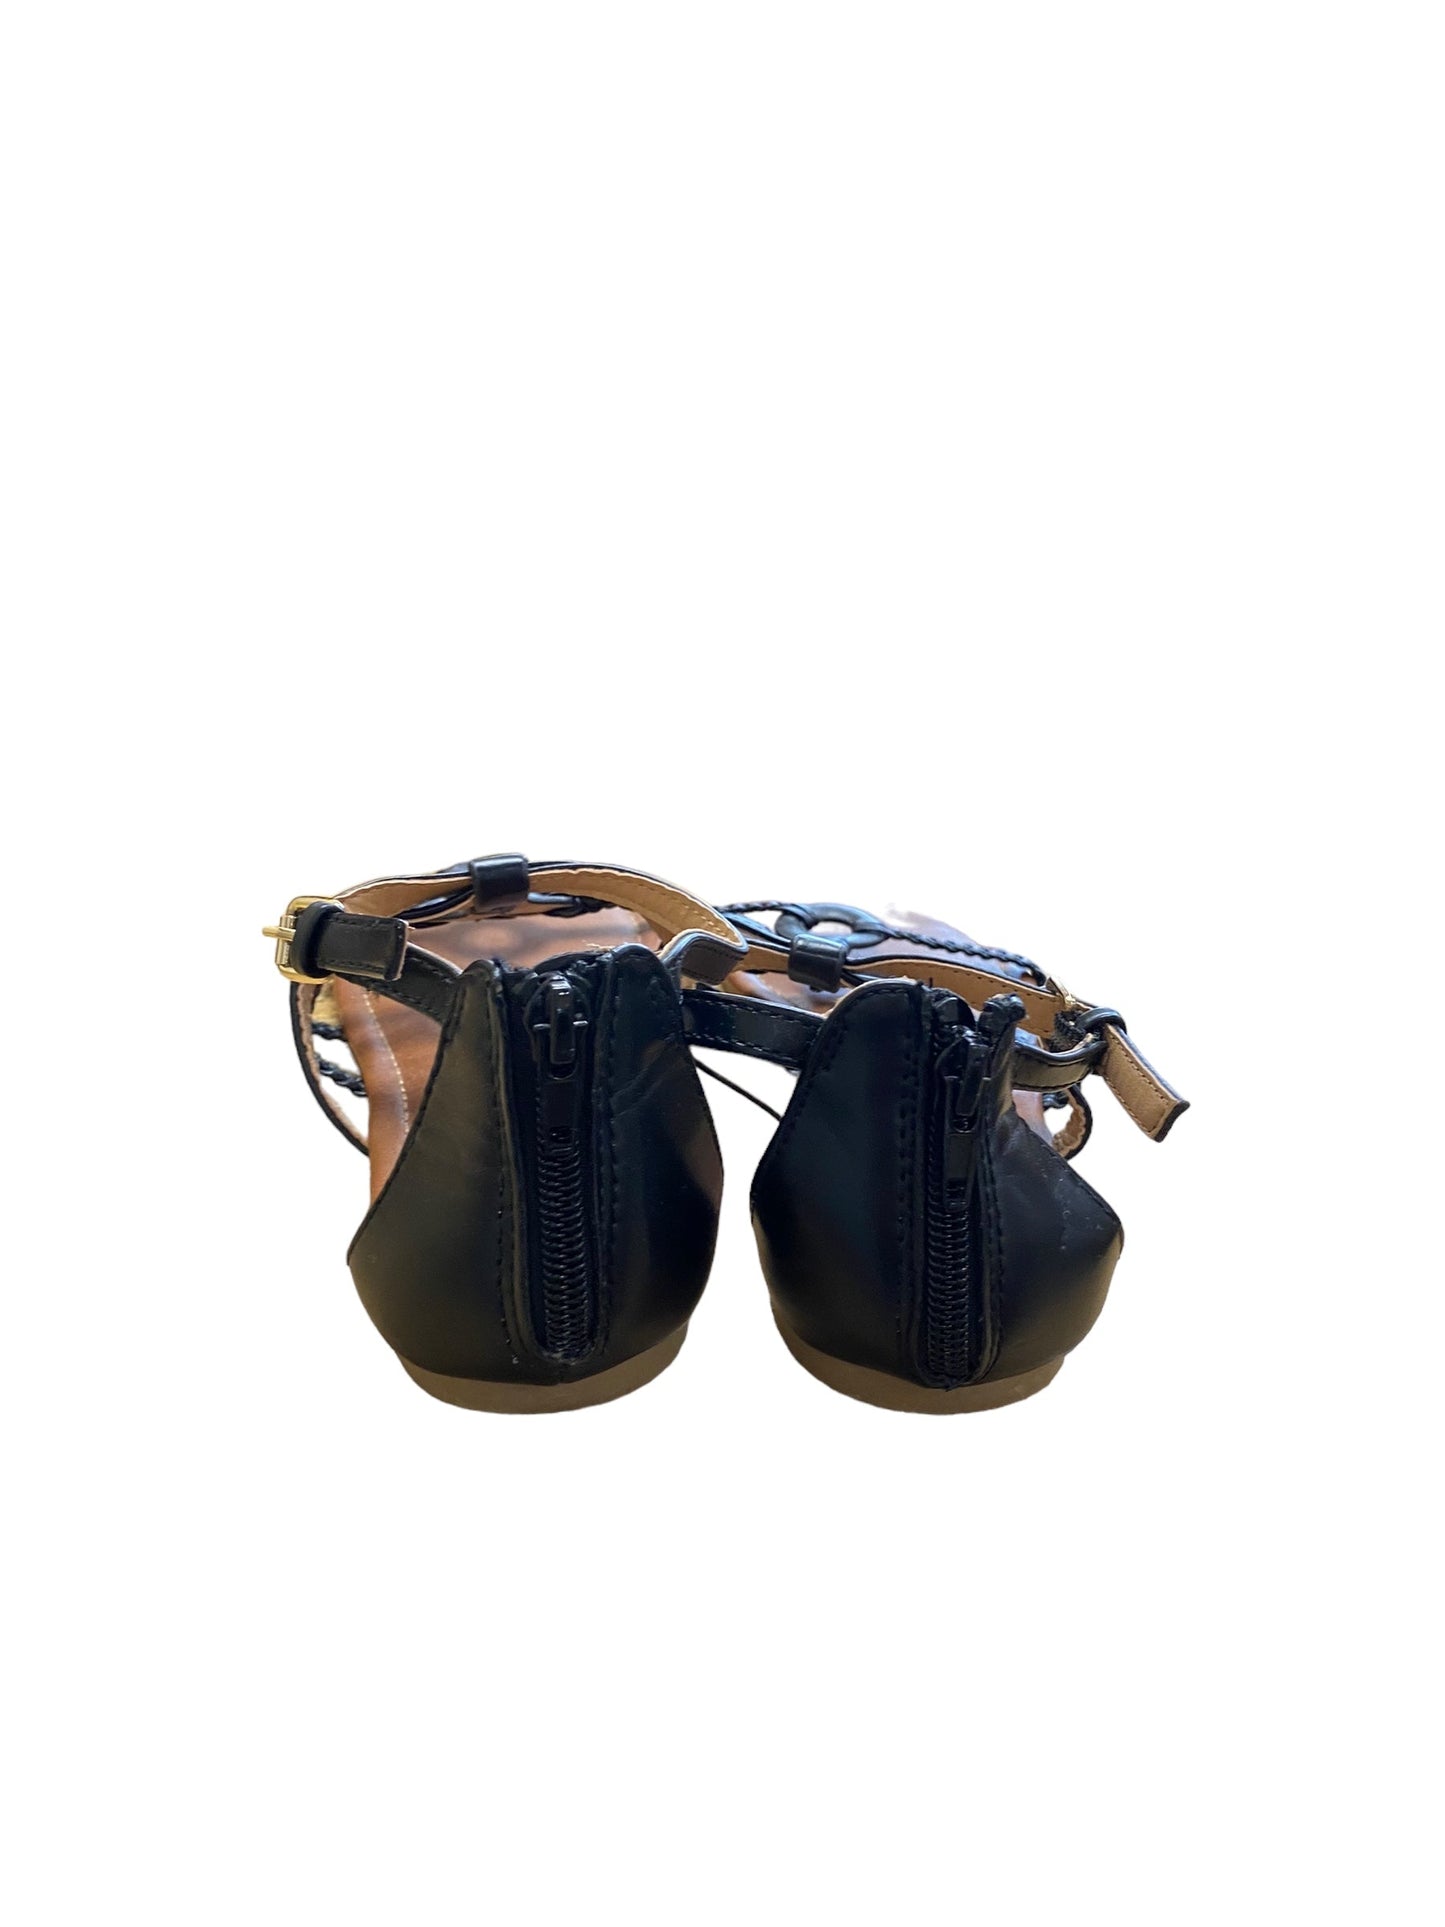 Black Sandals Flats Report, Size 8